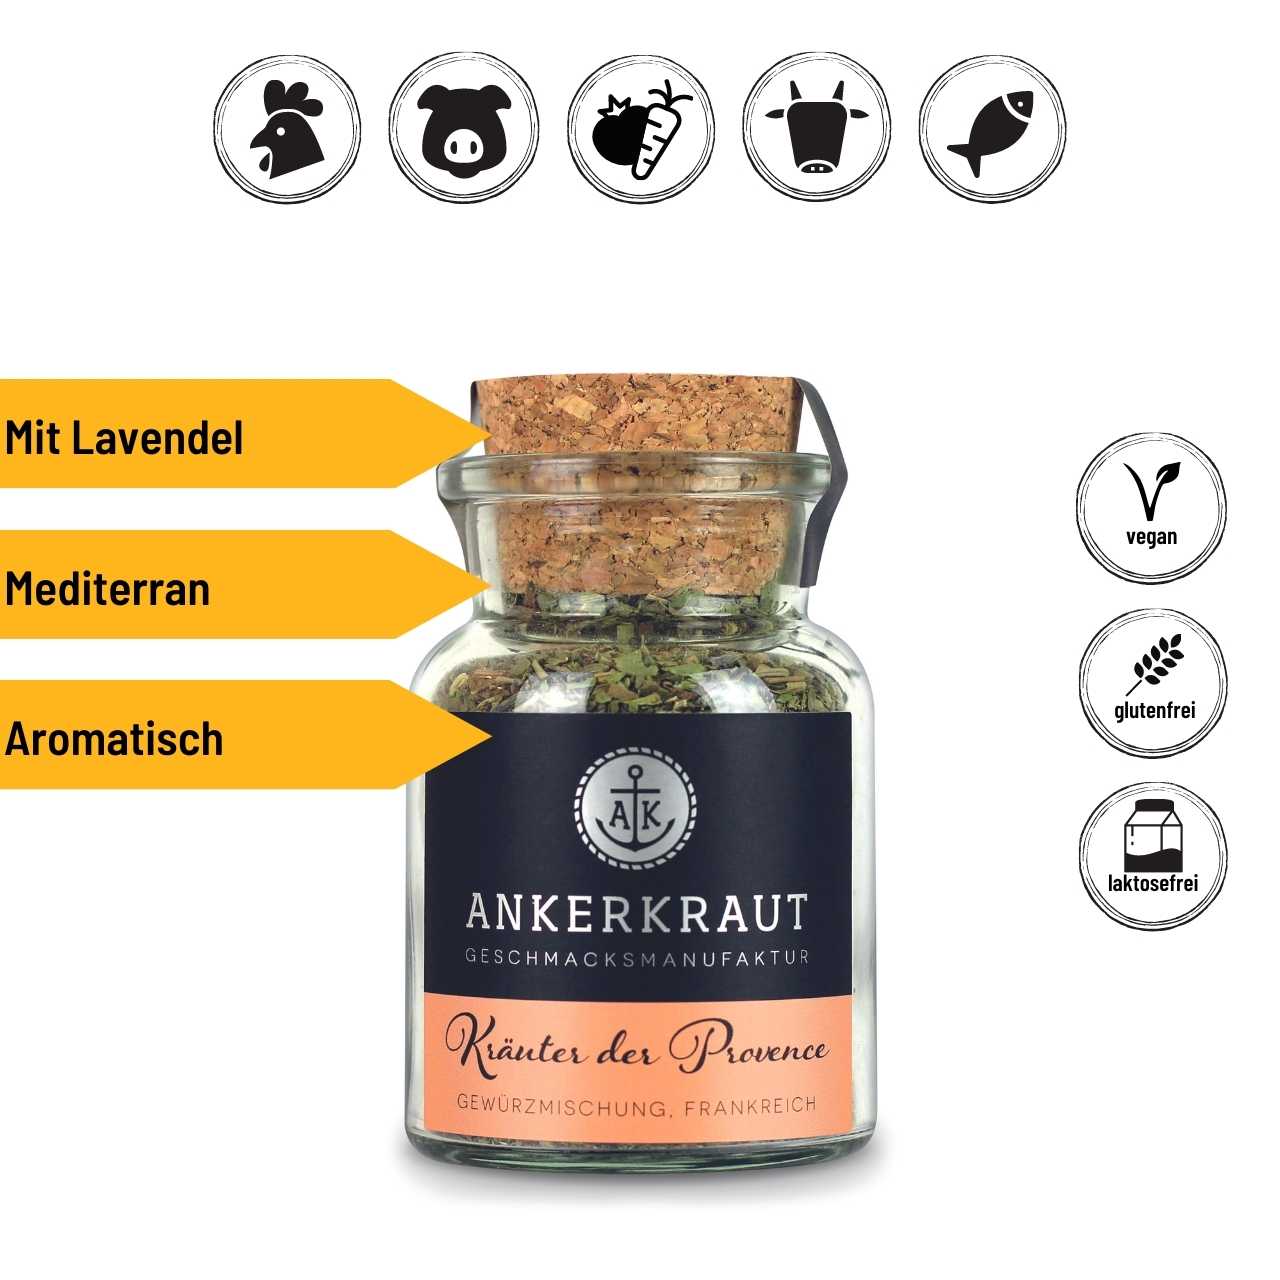 Ankerkraut Kräuter der Provence, 30 g Korkenglas